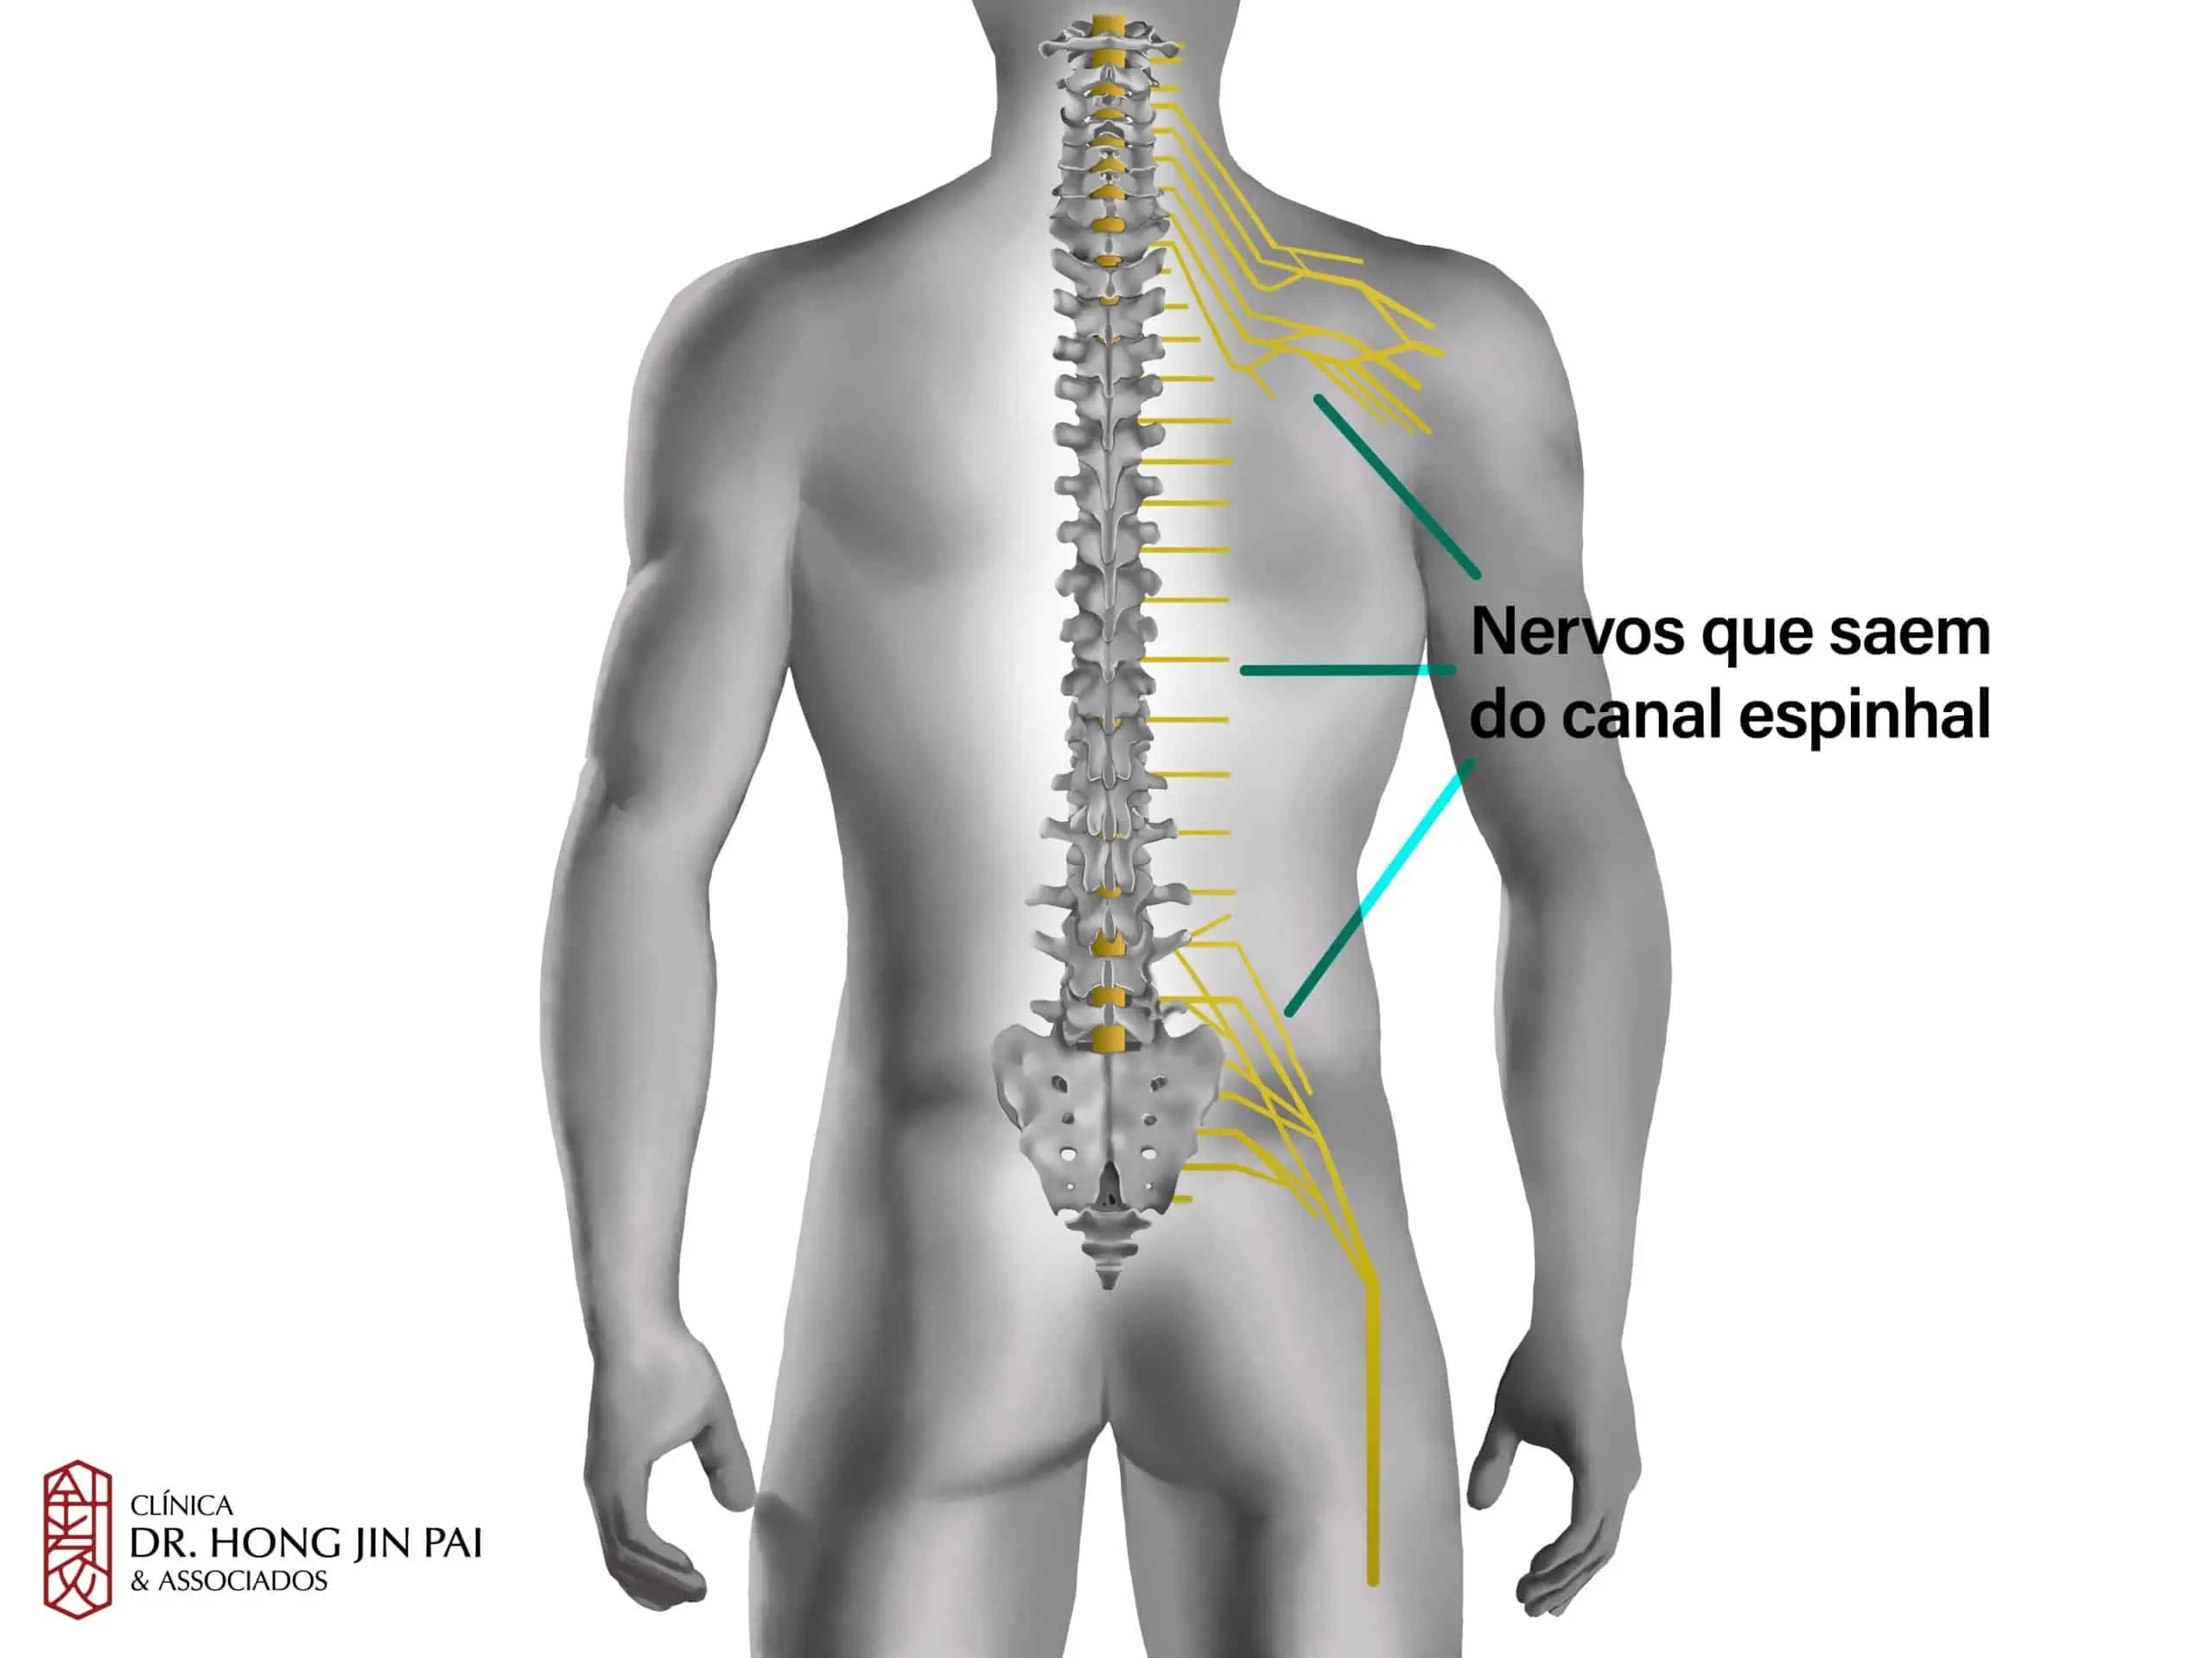 https://www.hong.com.br/wp-content/uploads/2022/09/ANATOMIA-COLUNA-vertebral-NERVOS-scaled.webp